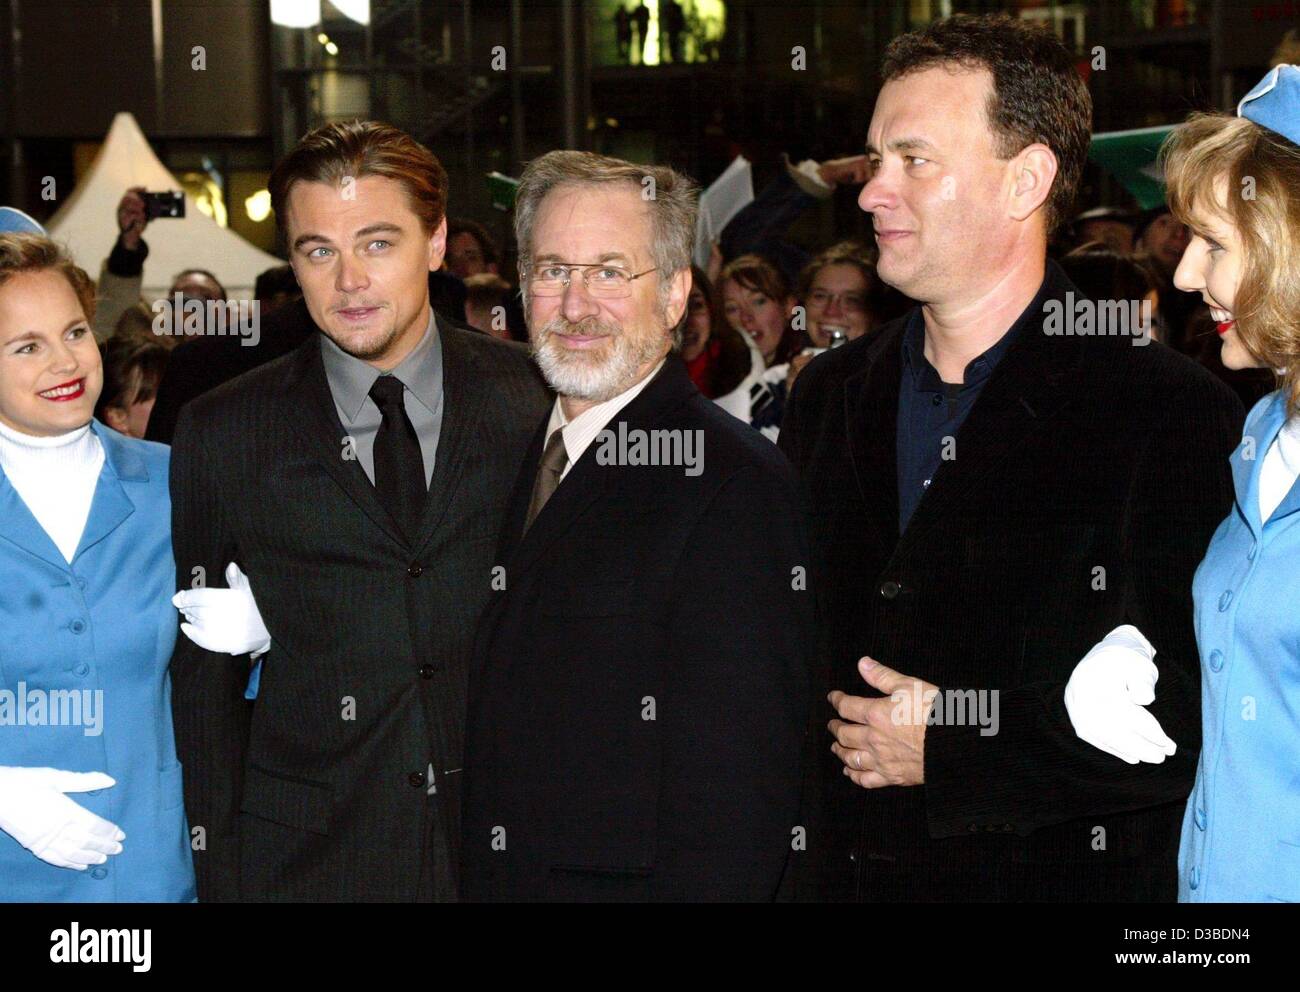 (Dpa) - Los actores estadounidenses Leonardo DiCaprio (L) y Tom Hanks (R) posan con su director Steven Spielberg (C) y azafatas antes del estreno de su nueva película 'Catch Me Si Puedes" en Berlín, el 26 de enero de 2003. La película, basada en una historia real, se trata de un exitoso estafador (DiCaprio) que mana Foto de stock